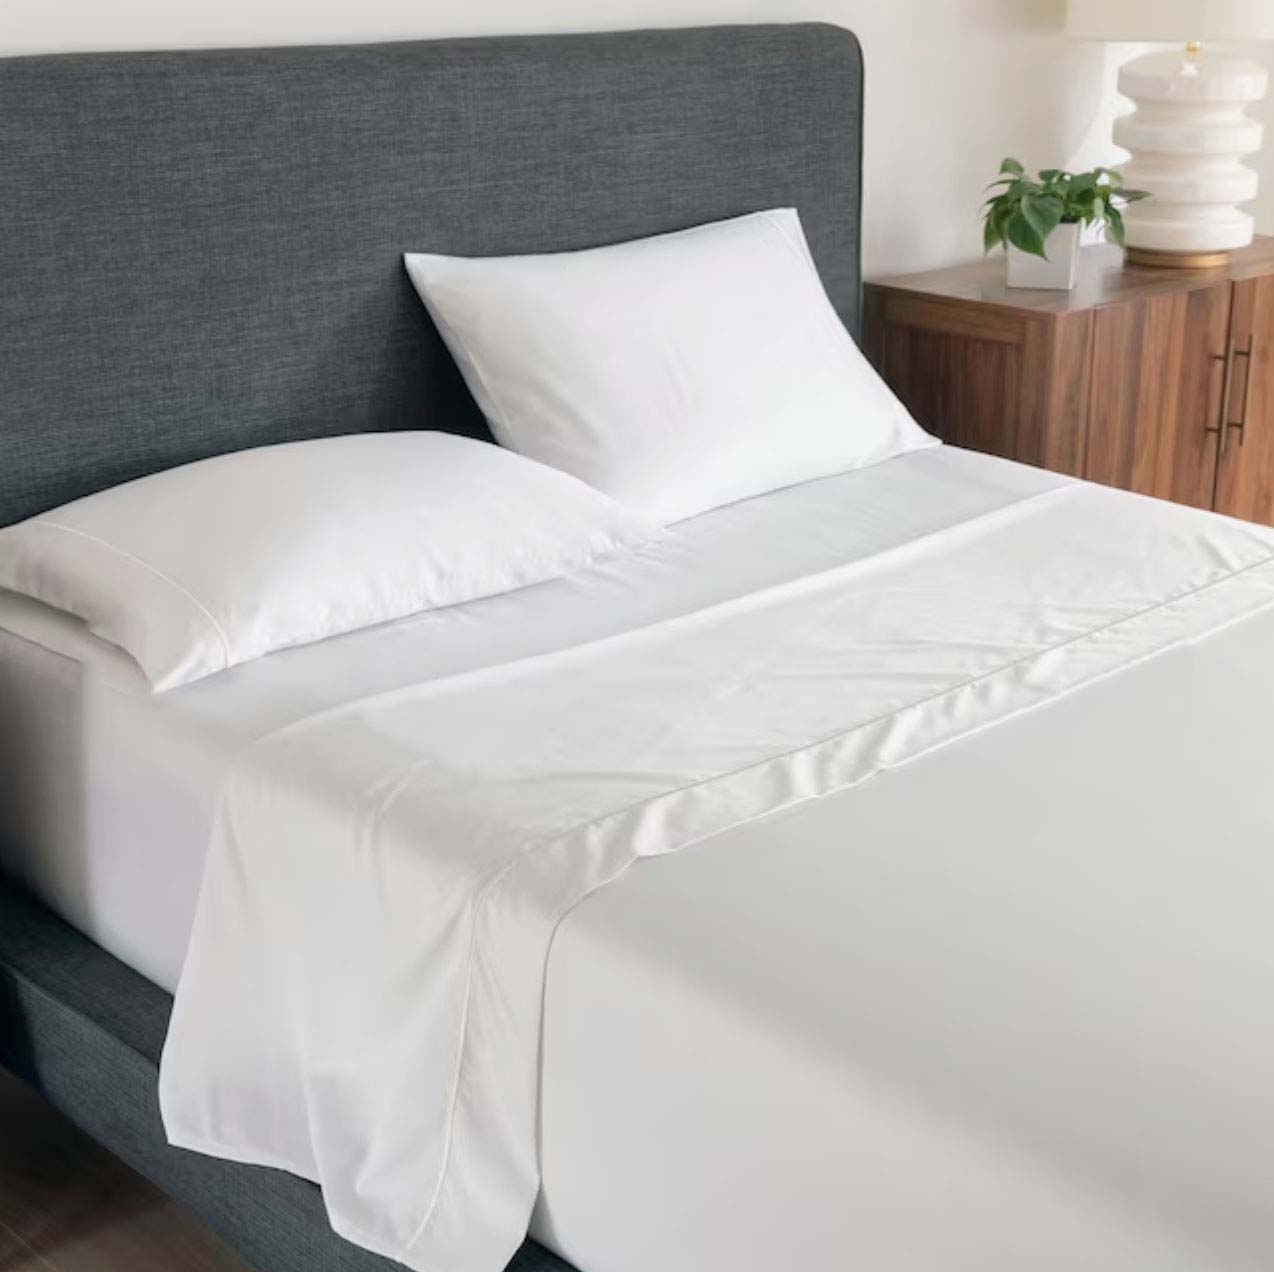 White sheet in bedroom setting